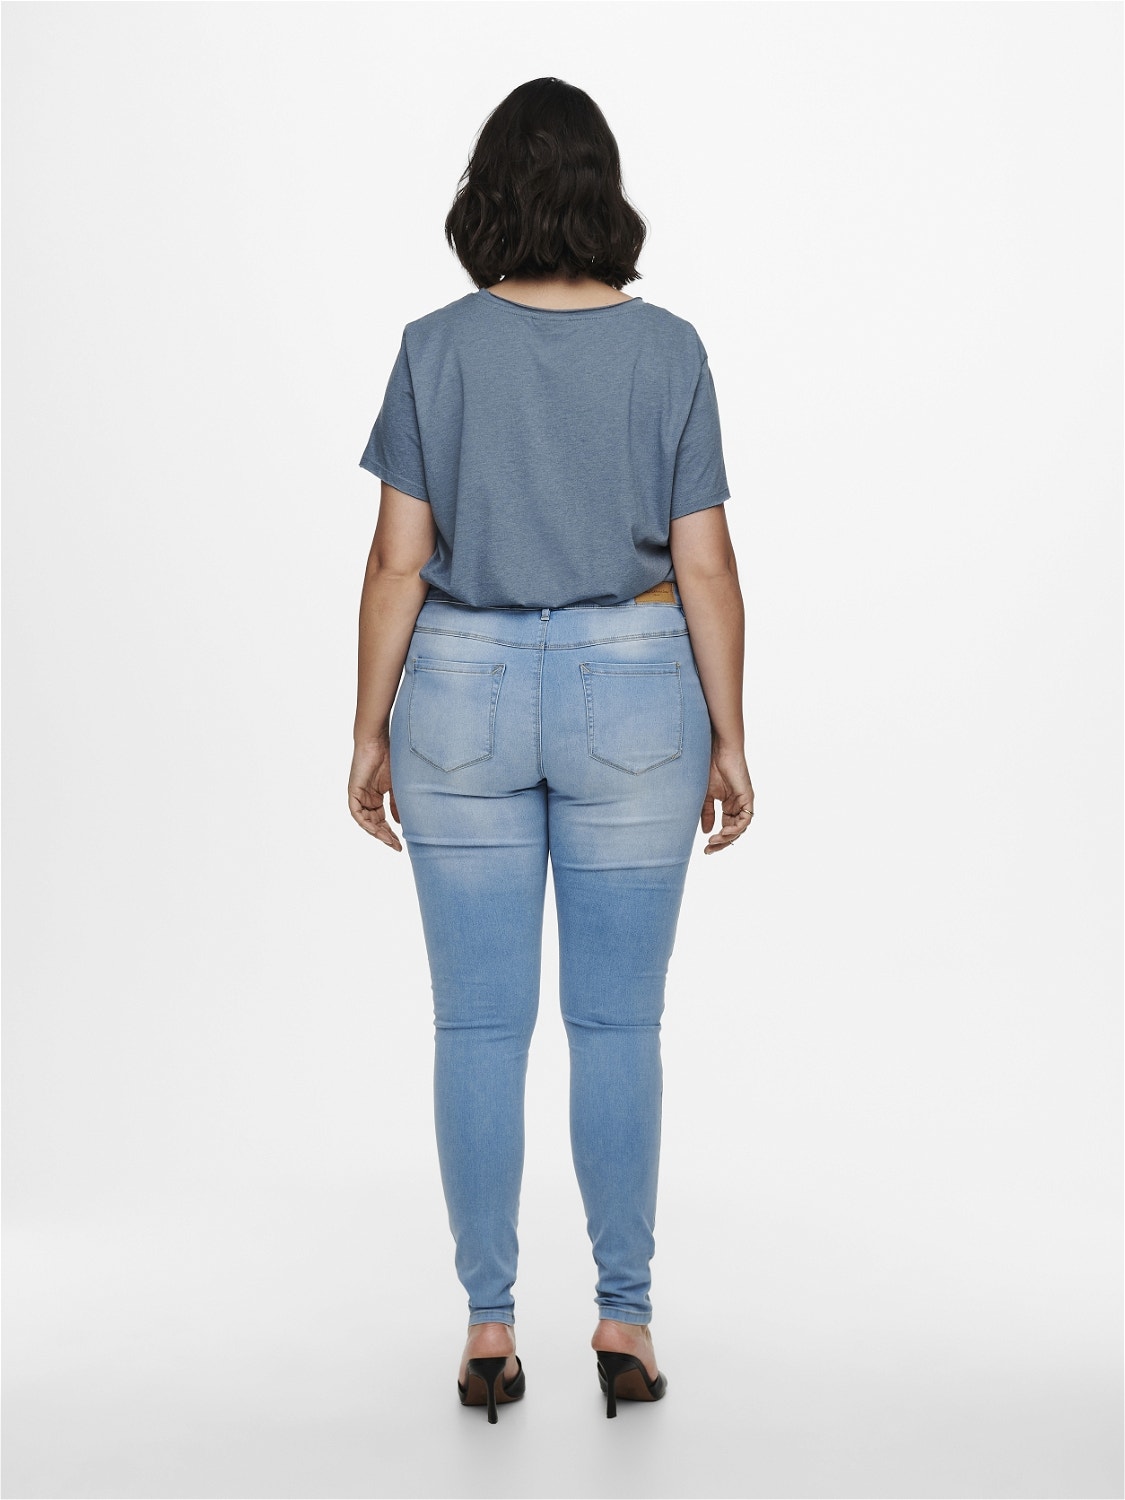 CarAugusta | | Jeans Fit Skinny HW ONLY® Curvy Hellblau